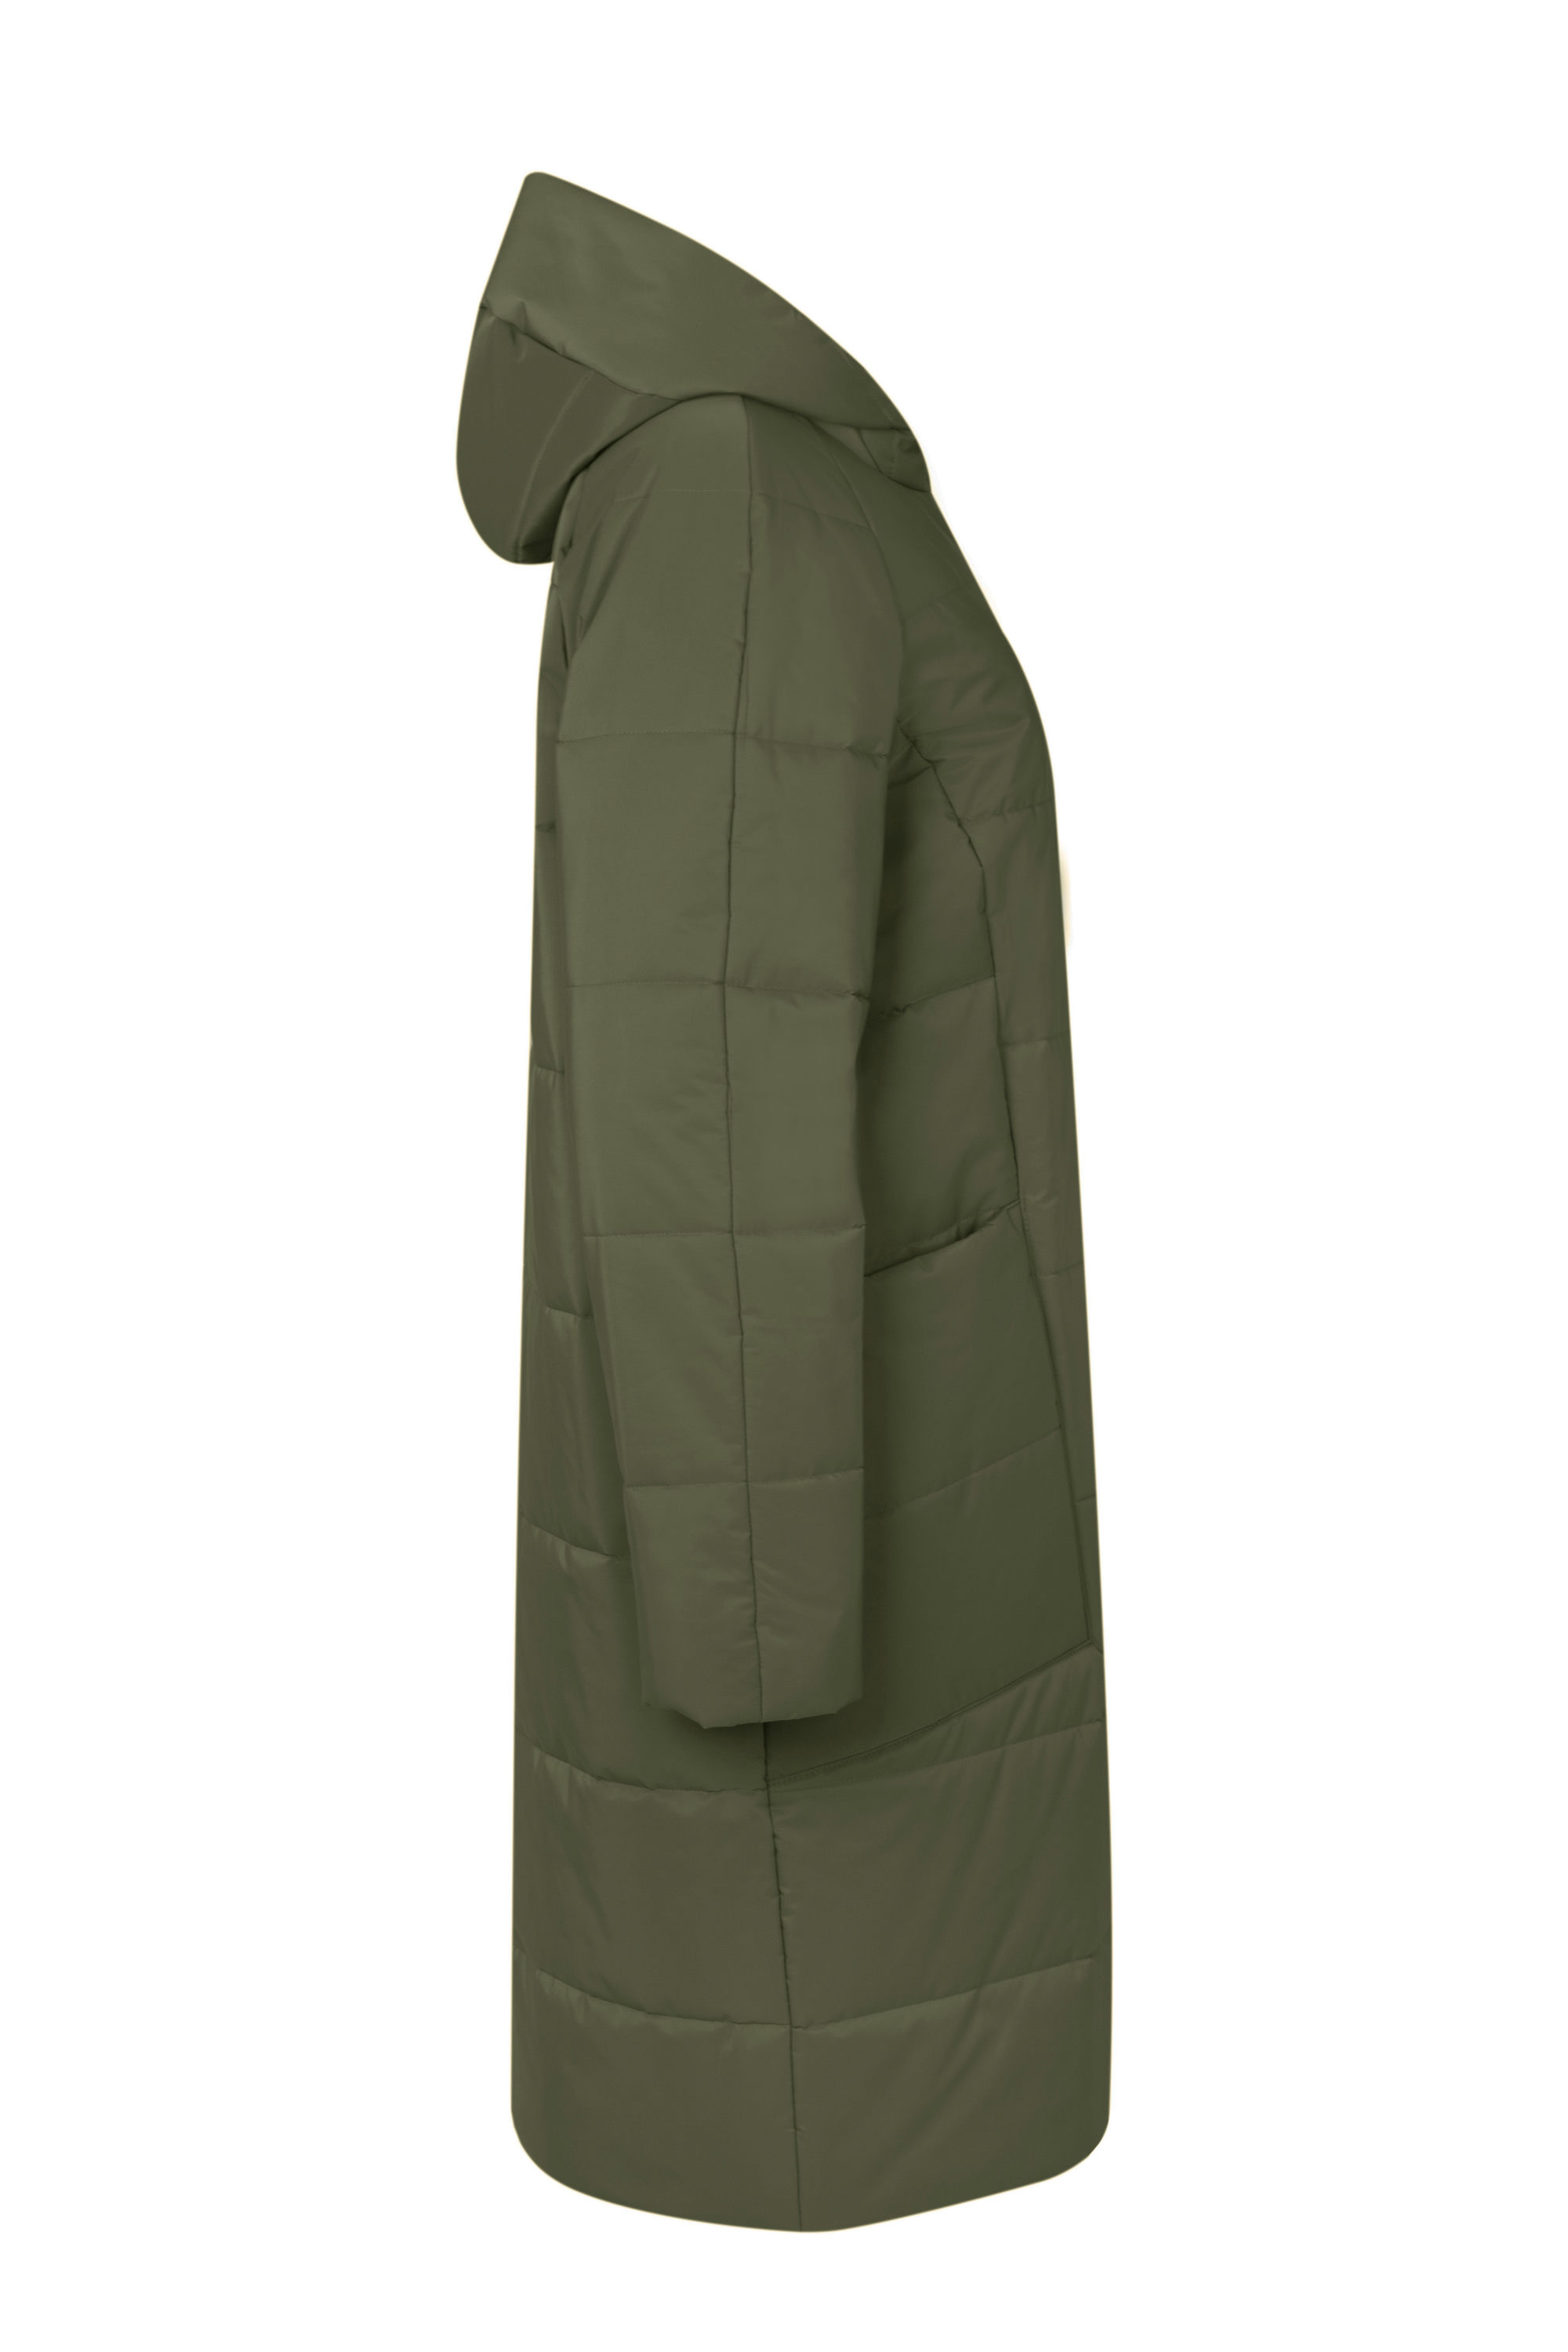 Пальто женское плащевое утепленное 5-12590-1. Фото 2.